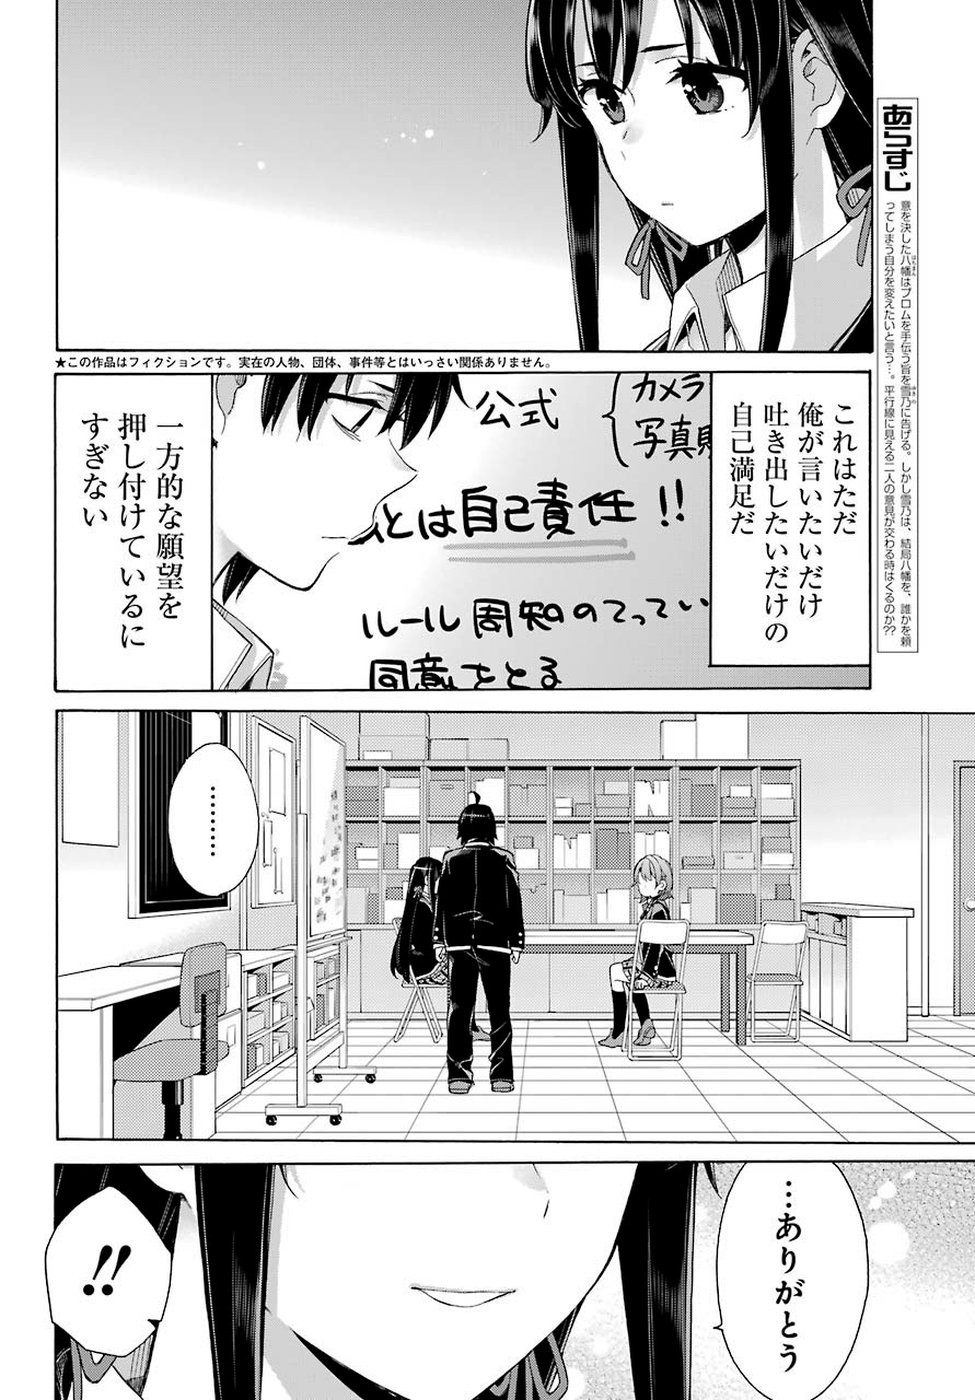 Yahari Ore no Seishun Rabukome wa Machigatte Iru. - Monologue - Chapter 79 - Page 3